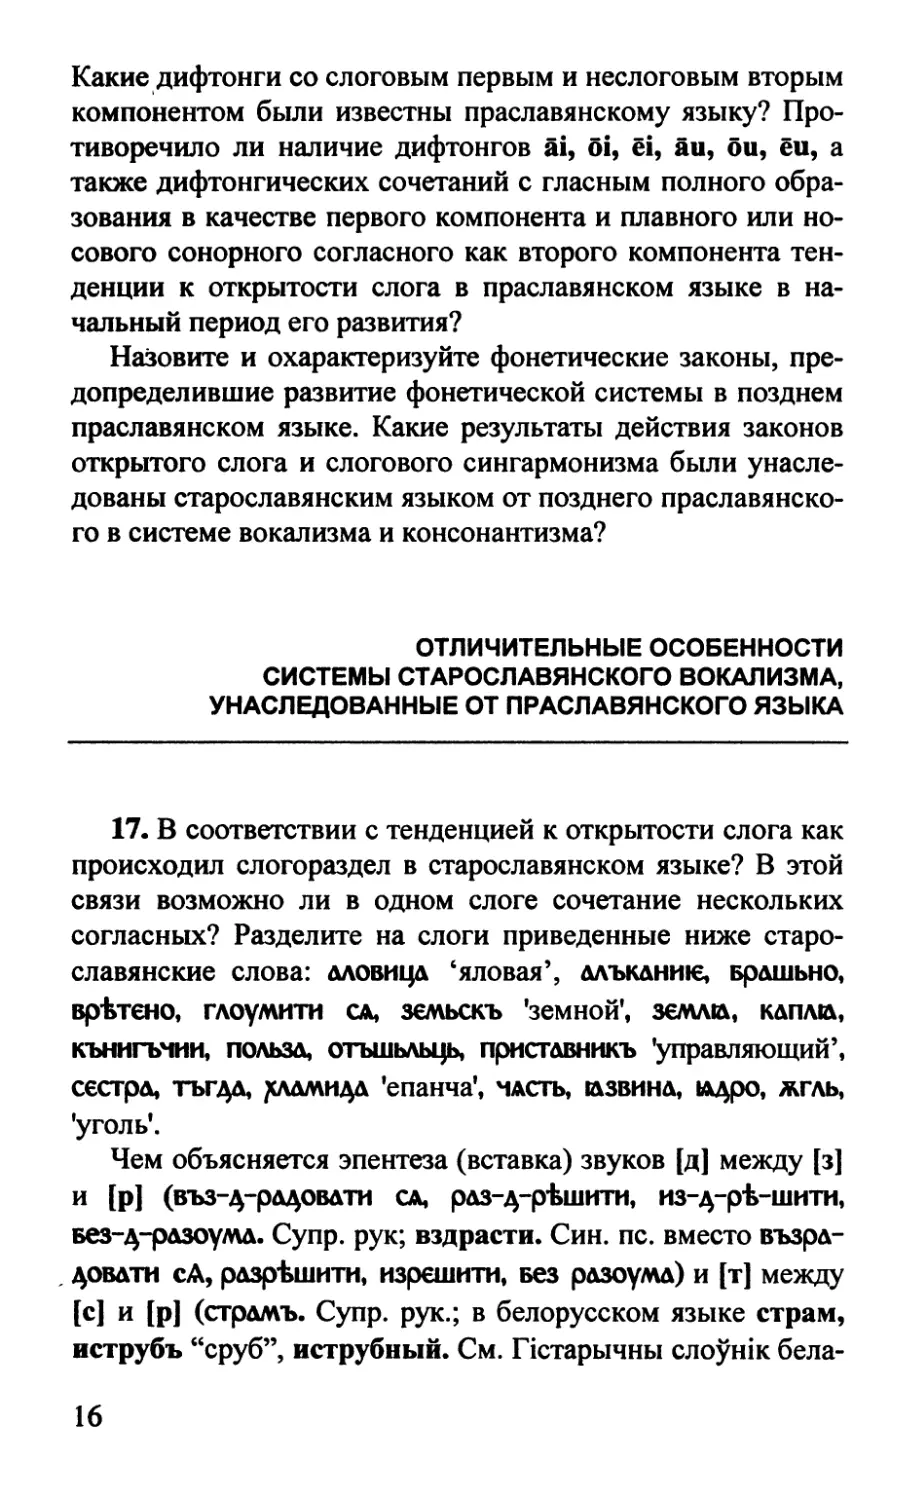 Отличительные особенности системы старославянского вокализма, унаследованные от праславянского языка